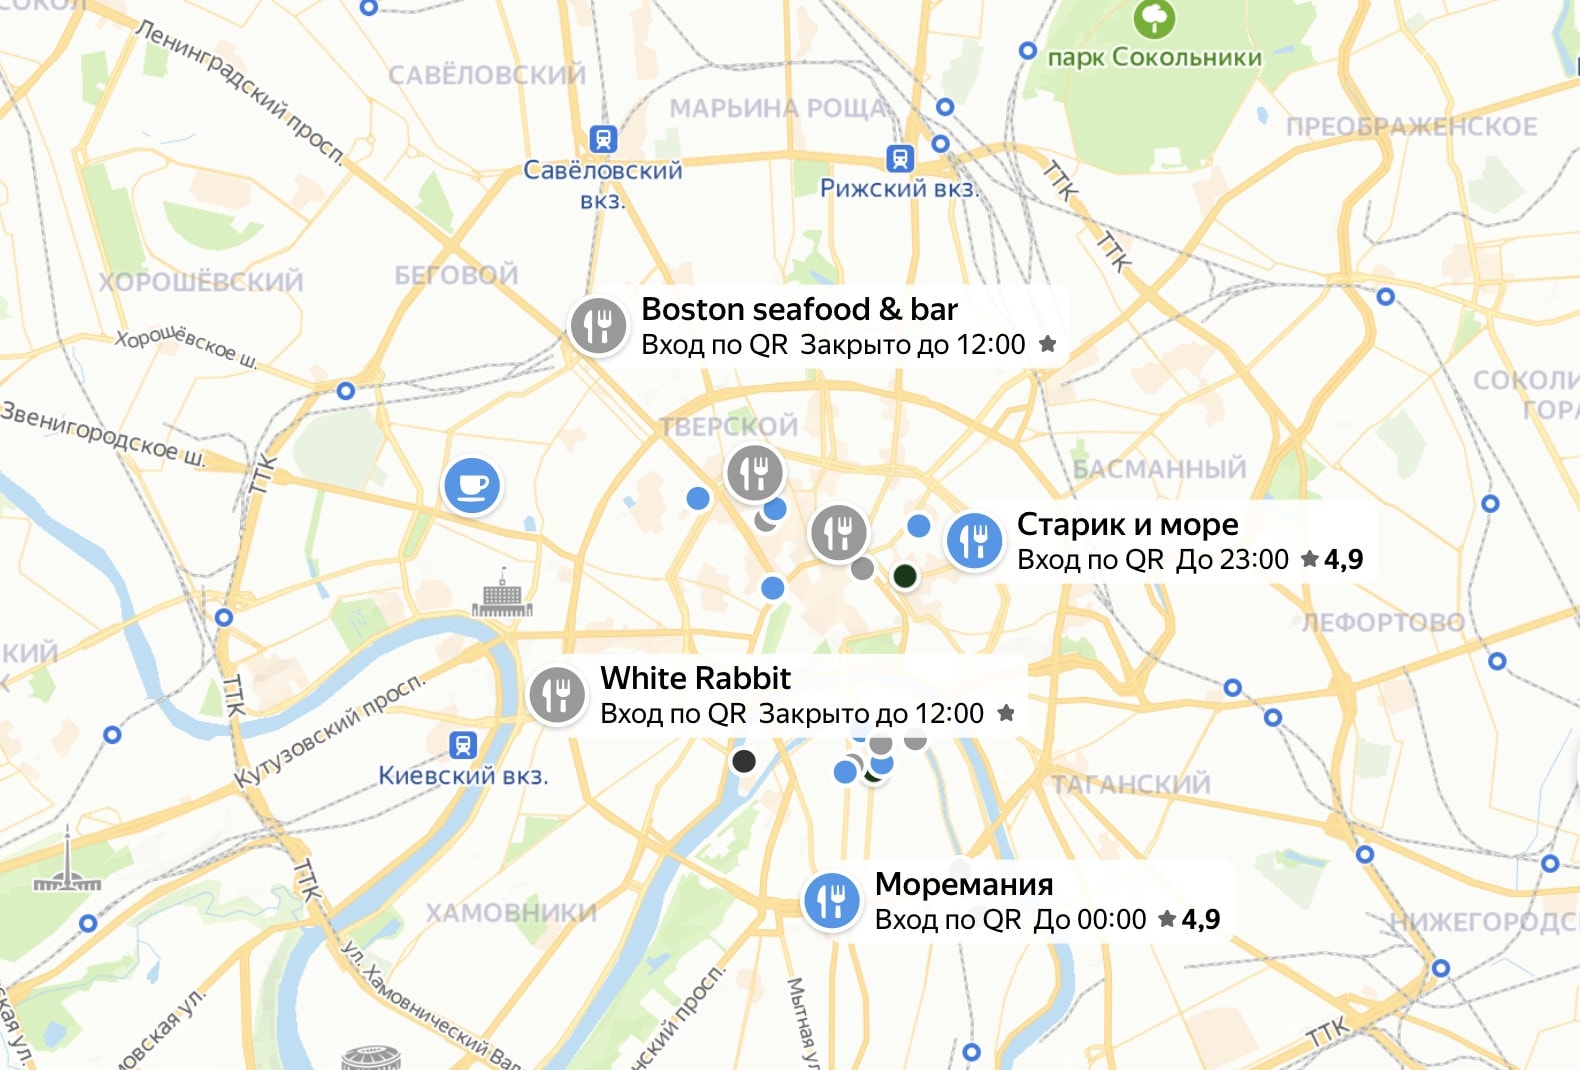 Яндекс.Карты стали показывать работающие по QR-коду рестораны Москвы